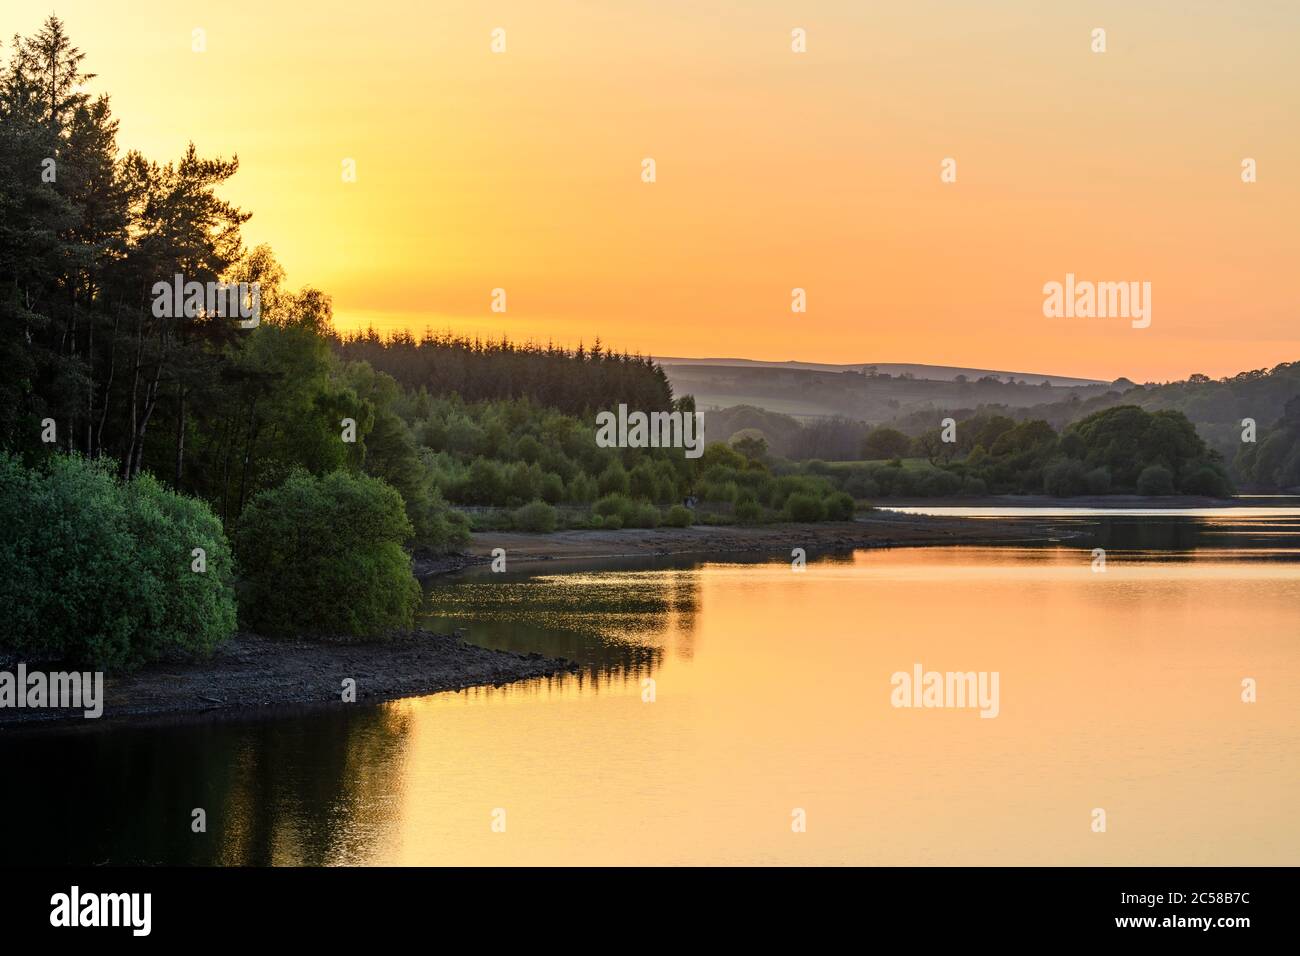 Splendido tramonto panoramico rurale su acque tranquille (alberi boschivi e riflessi di colorato cielo arancione) - Fewston Reservoir, North Yorkshire, GB. Foto Stock